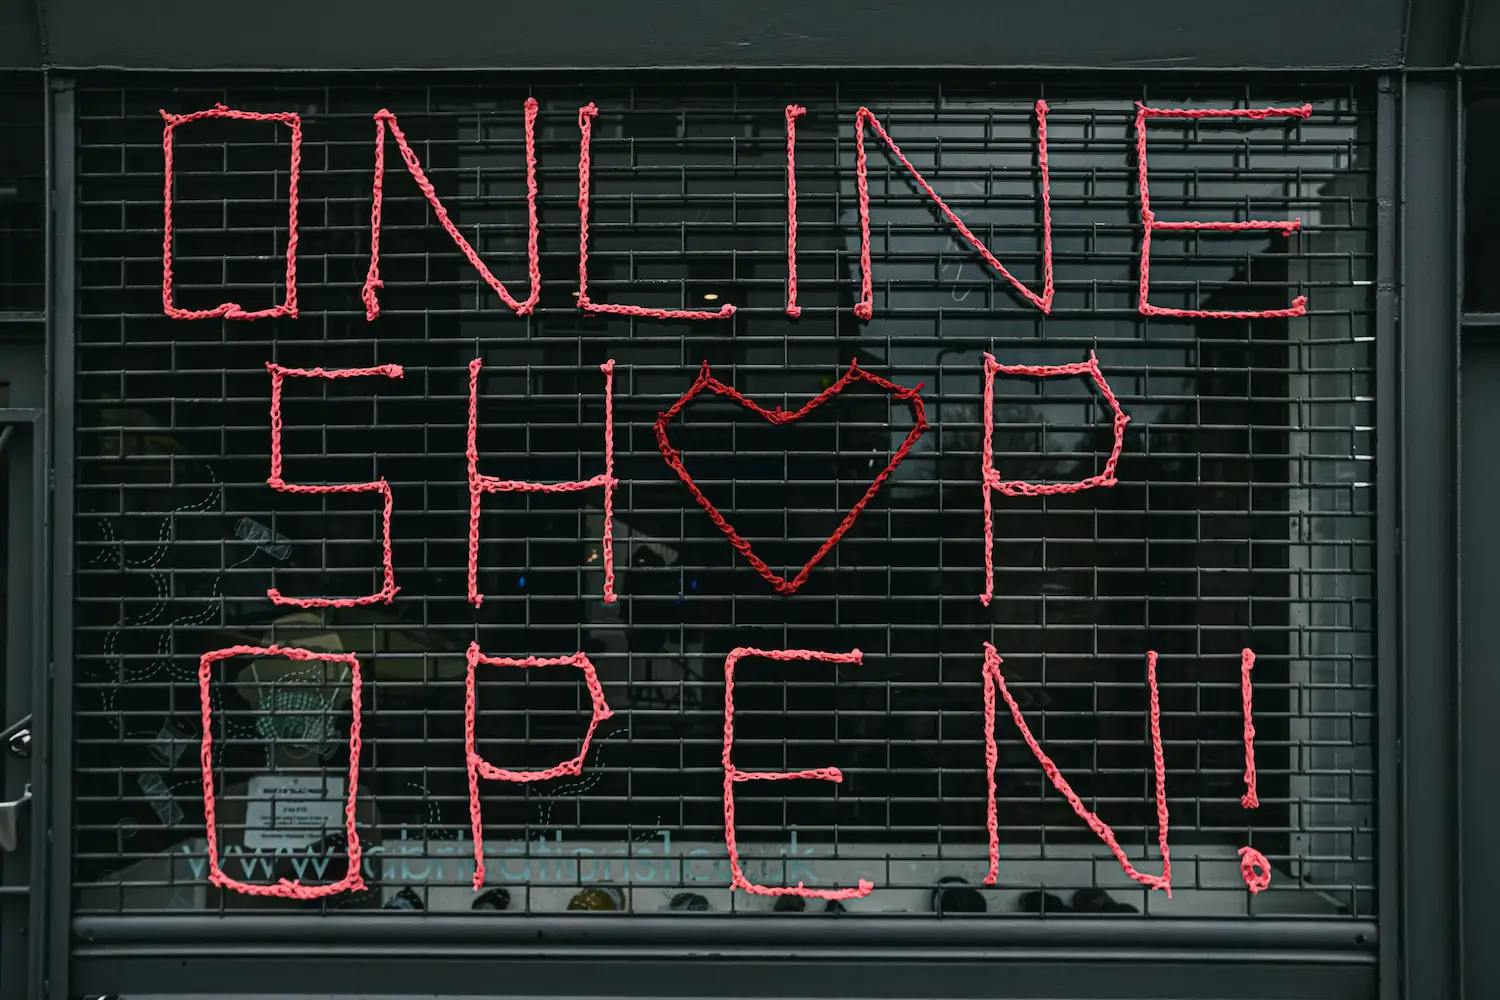 Açılır kepengin önünde kırmızı harflerle "Online Mağaza Açık!" yazısı.